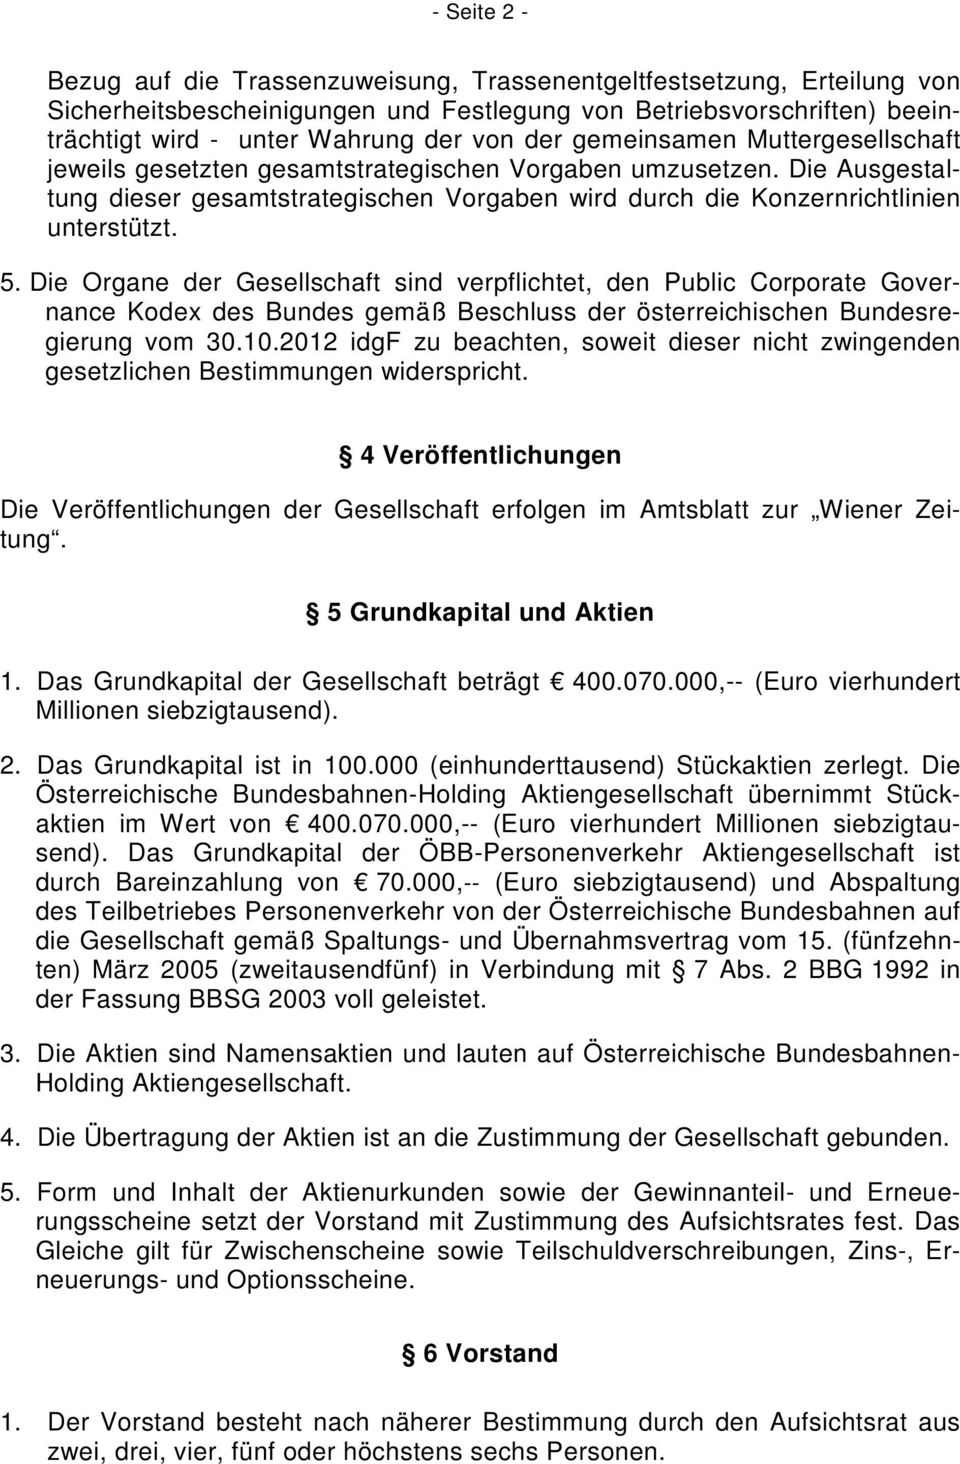 Die Organe der Gesellschaft sind verpflichtet, den Public Corporate Governance Kodex des Bundes gemäß Beschluss der österreichischen Bundesregierung vom 30.10.